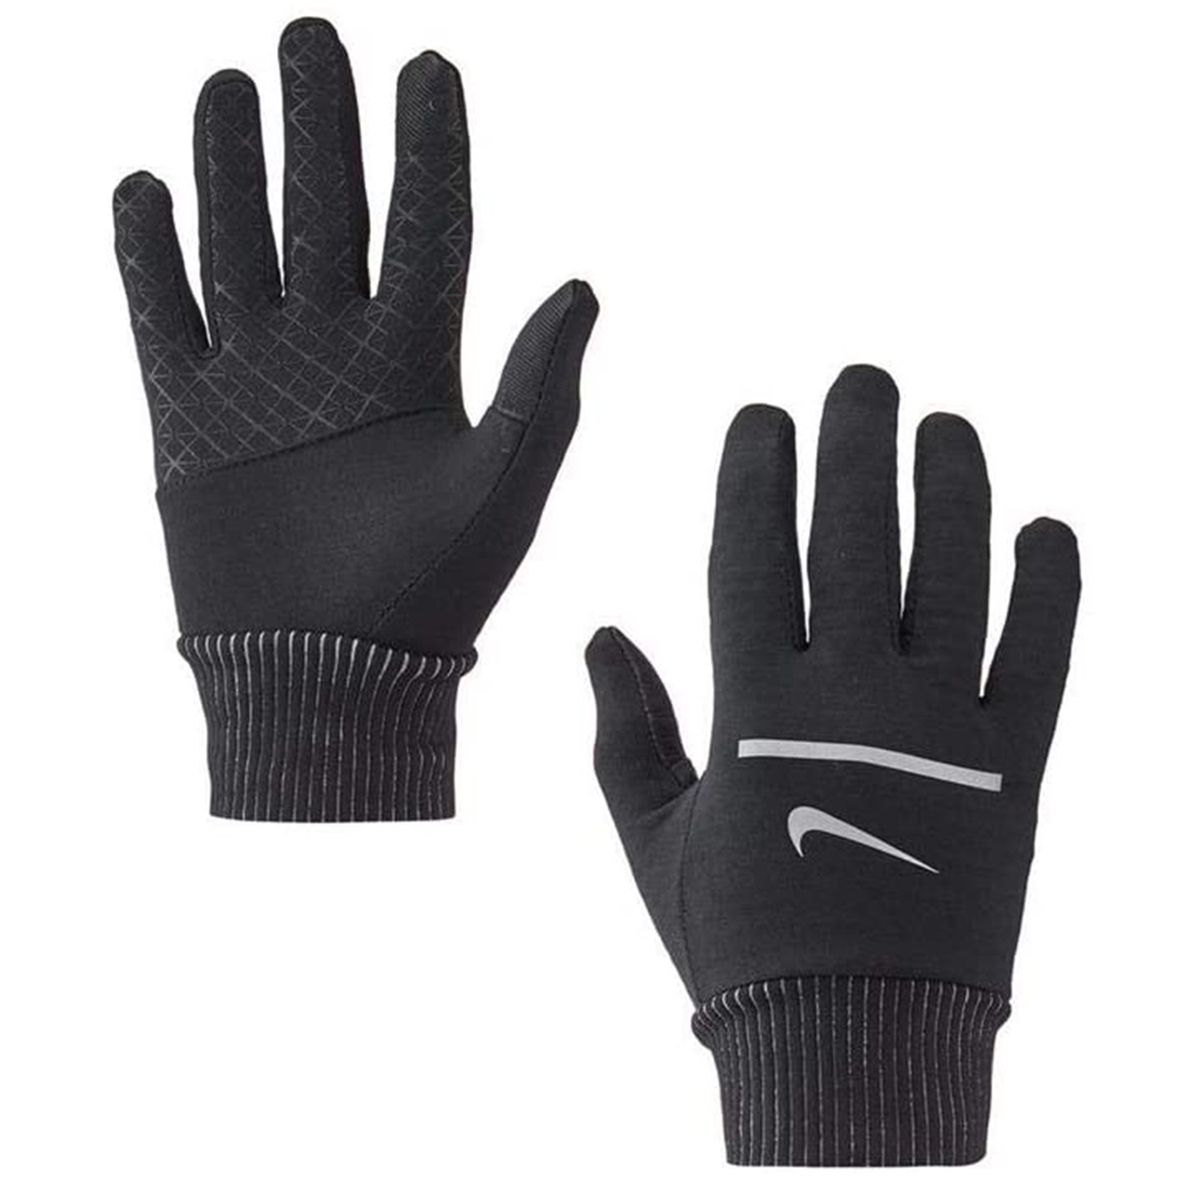 Best for Running: Nike Sphere Gloves